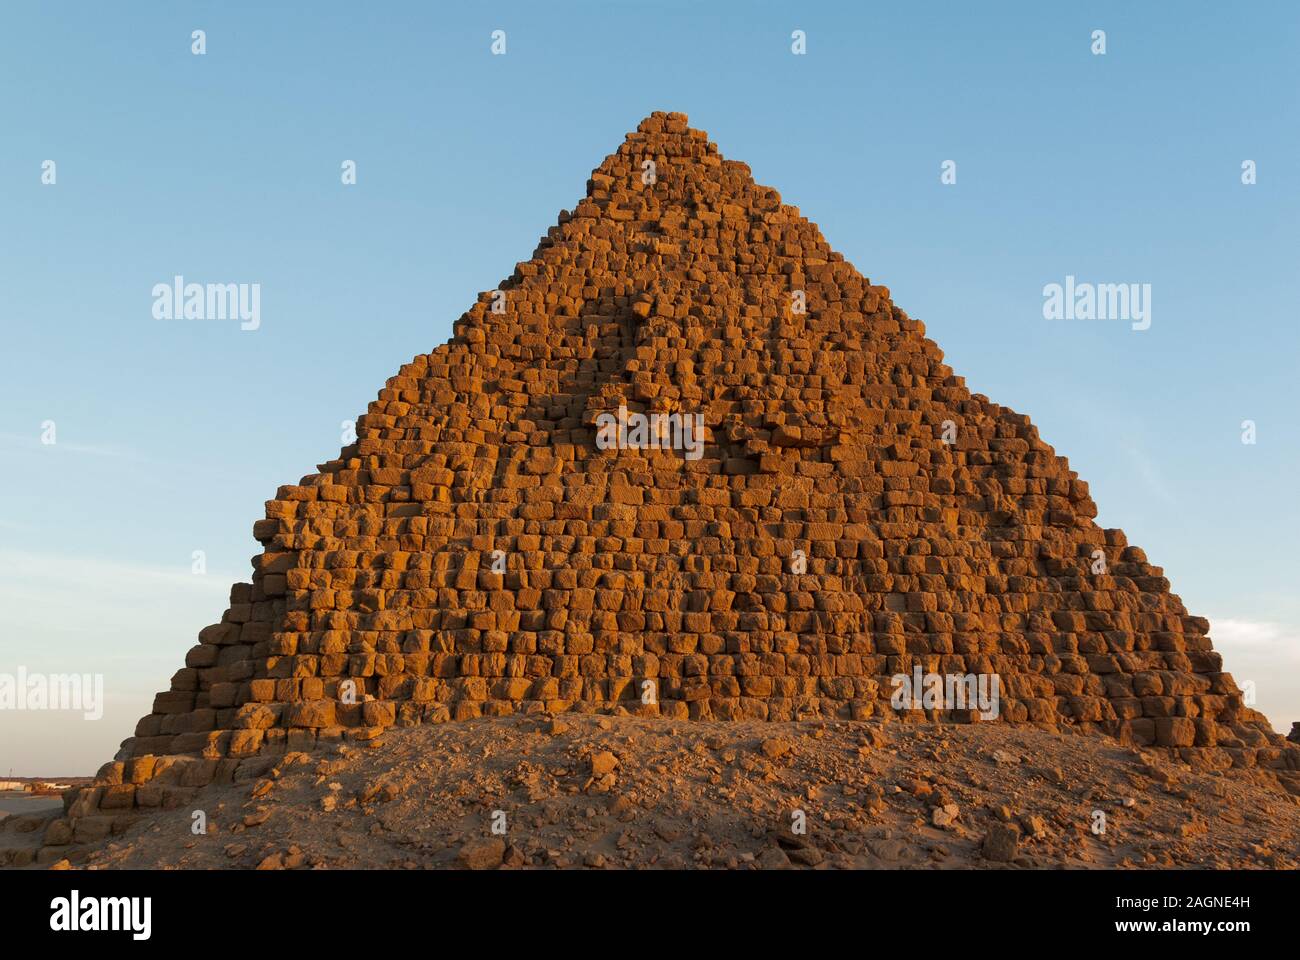 Pyramides, Necropoiis Royal, Nuri près de Karima, le nord du Soudan Banque D'Images